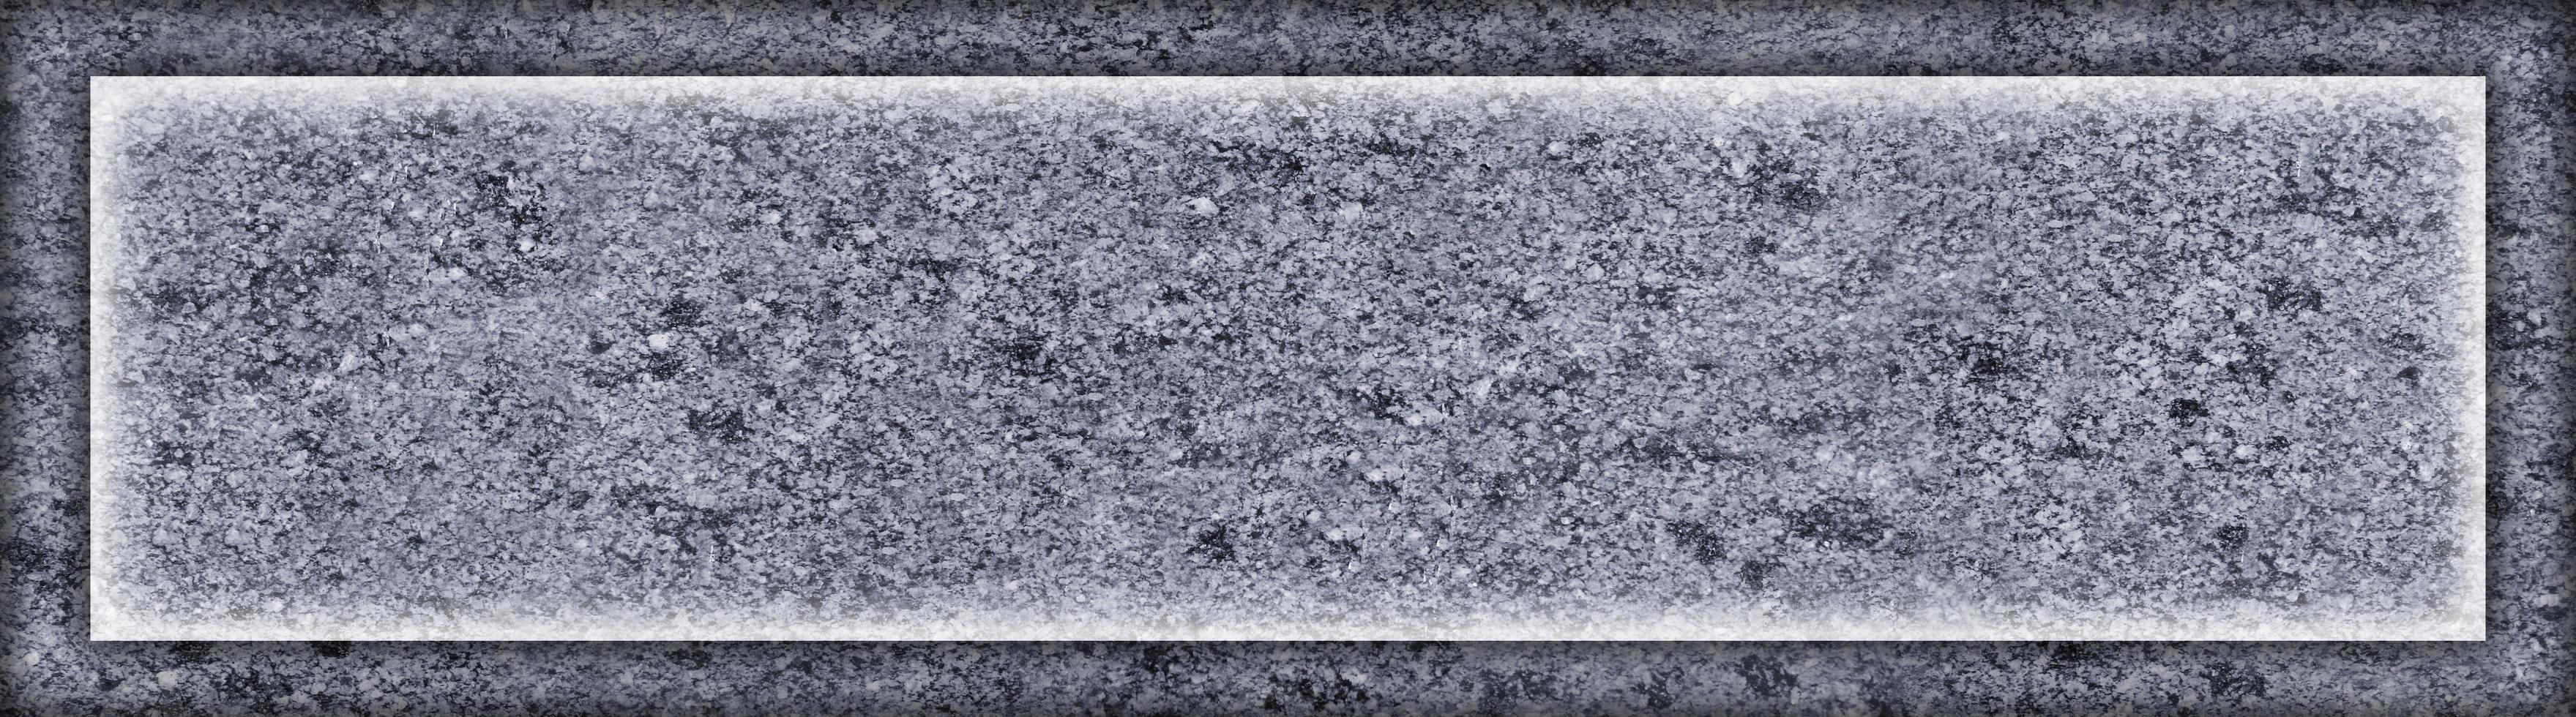 textura monocromática de la superficie de granito foto